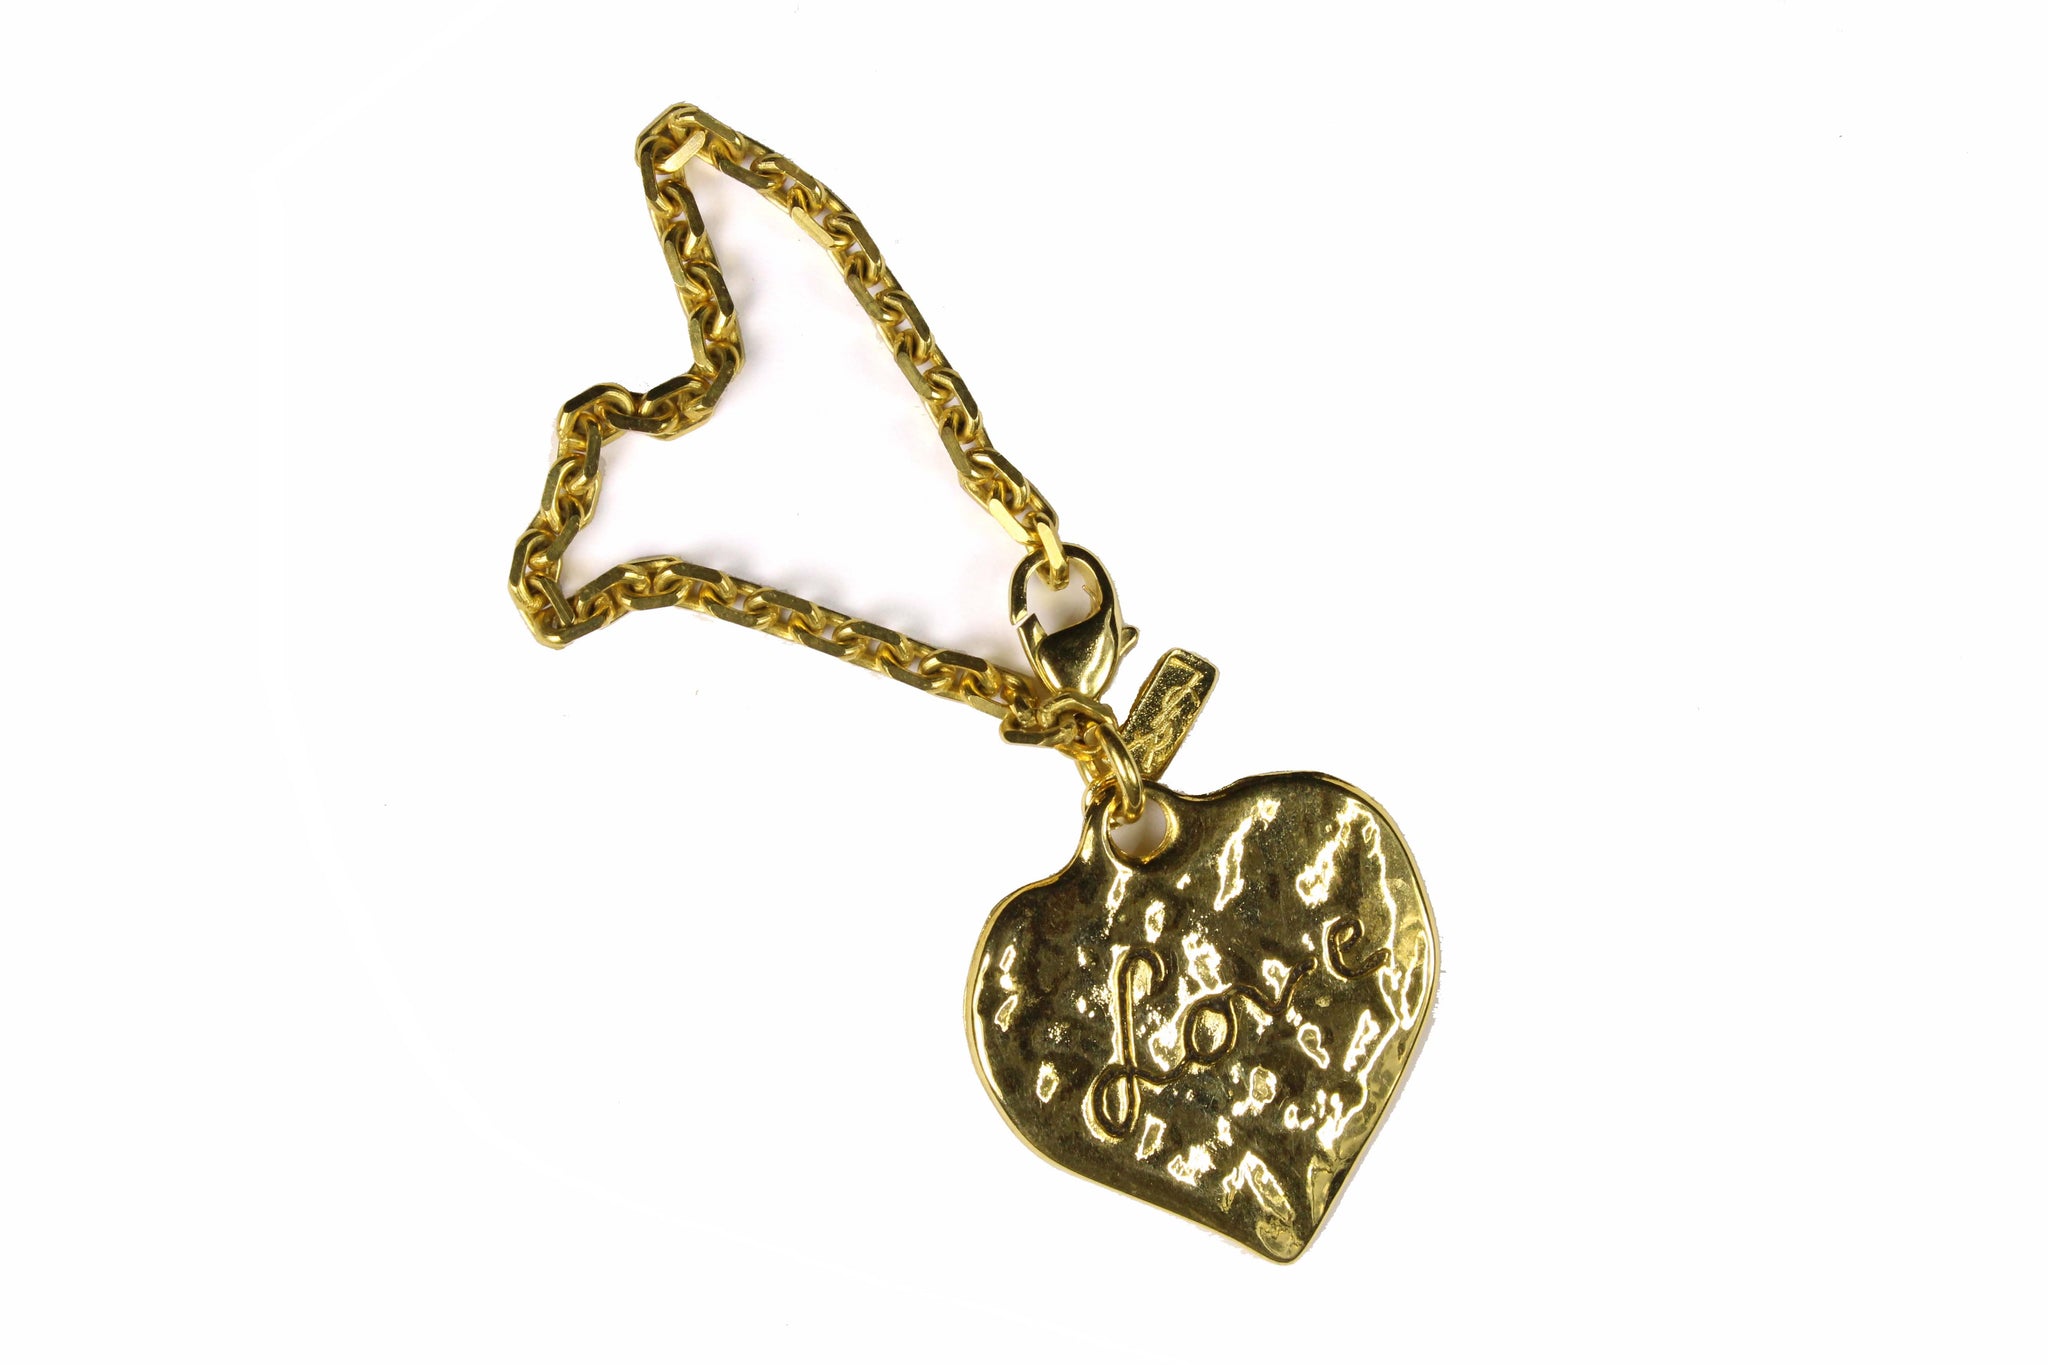 A Closer Look: Yves Saint Laurent Love Heart Chain Bag